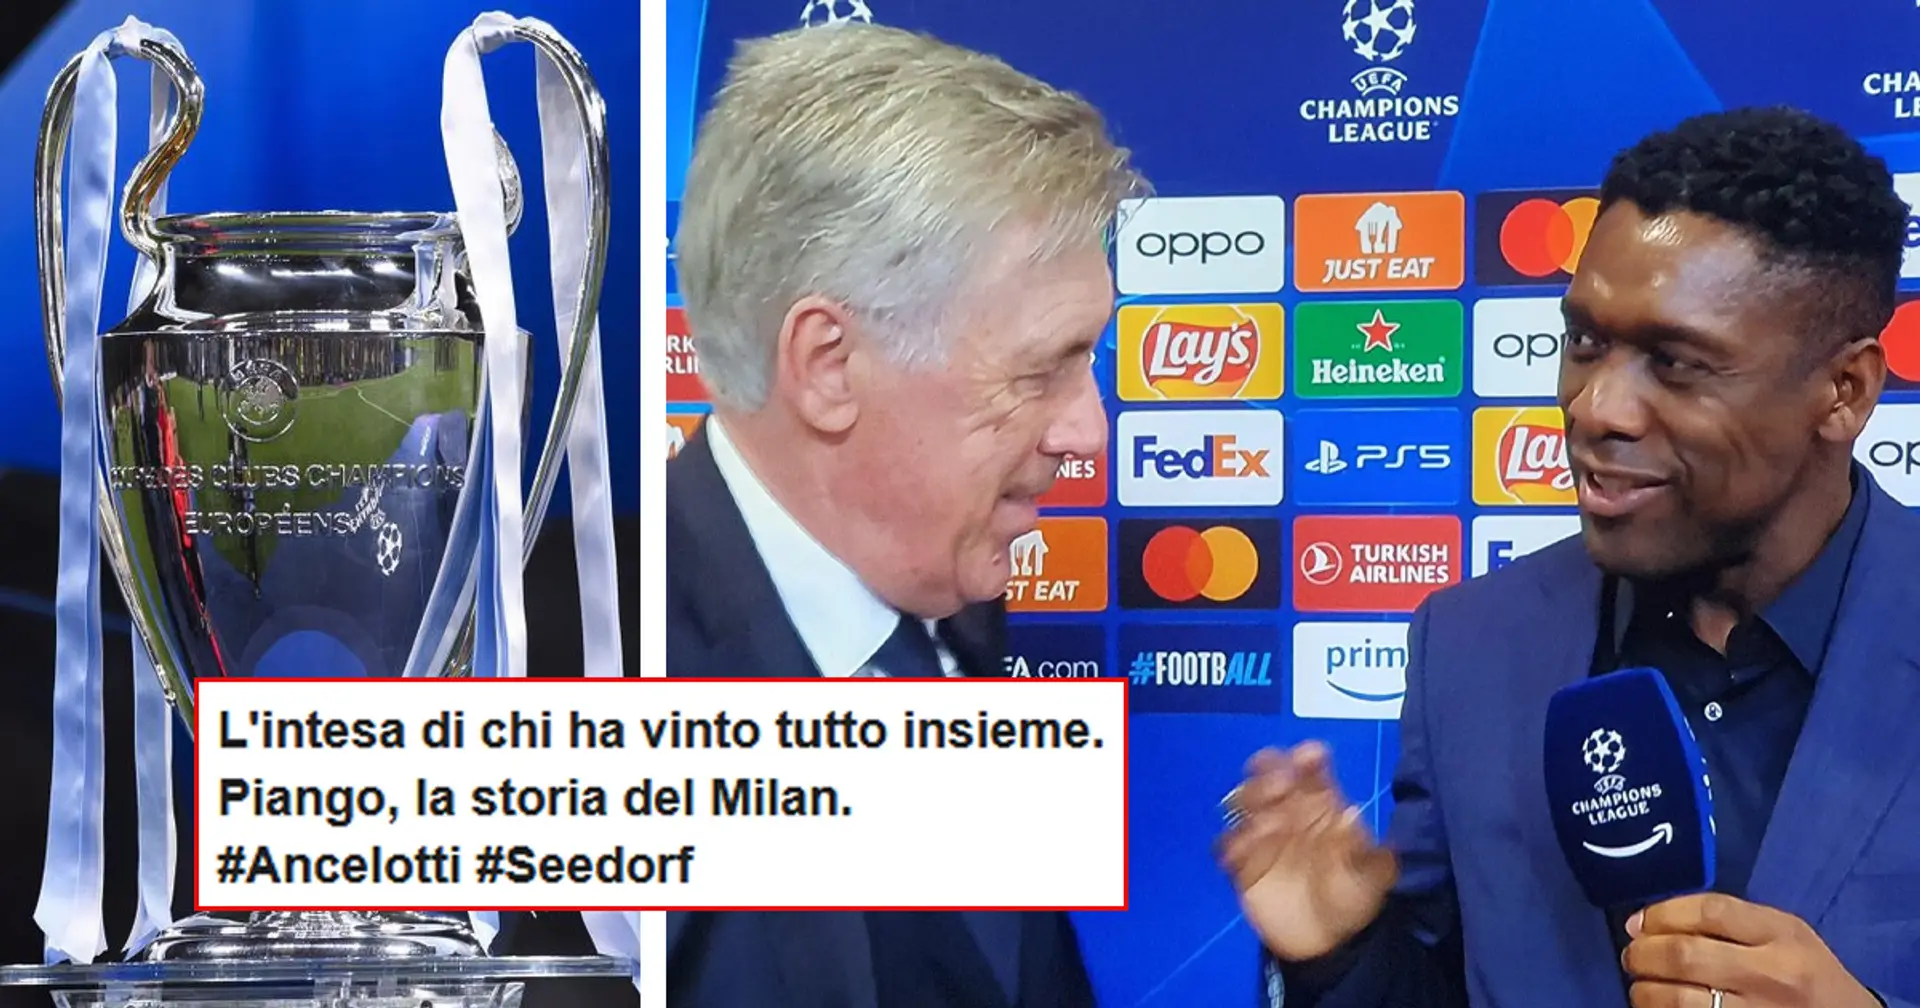 "Ho goduto": Seedorf si congratula con Ancelotti post Champions, tifosi del Milan nostalgici sui social